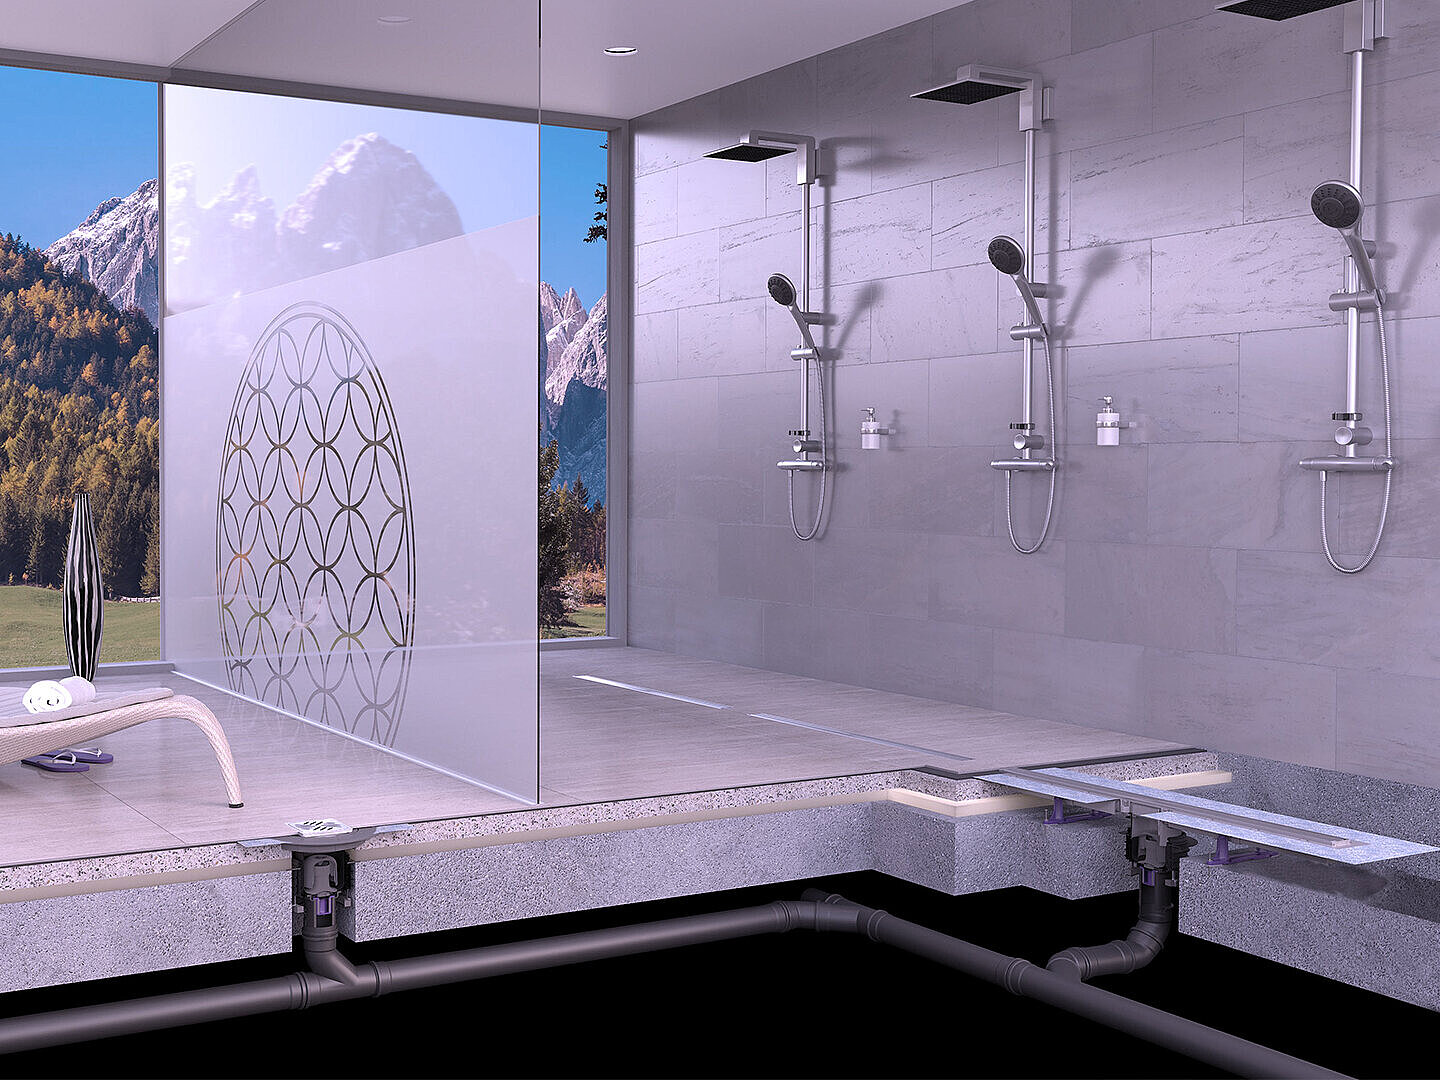 Schéma de montage du caniveau de douche Linearis Comfort dans un espace bien-être